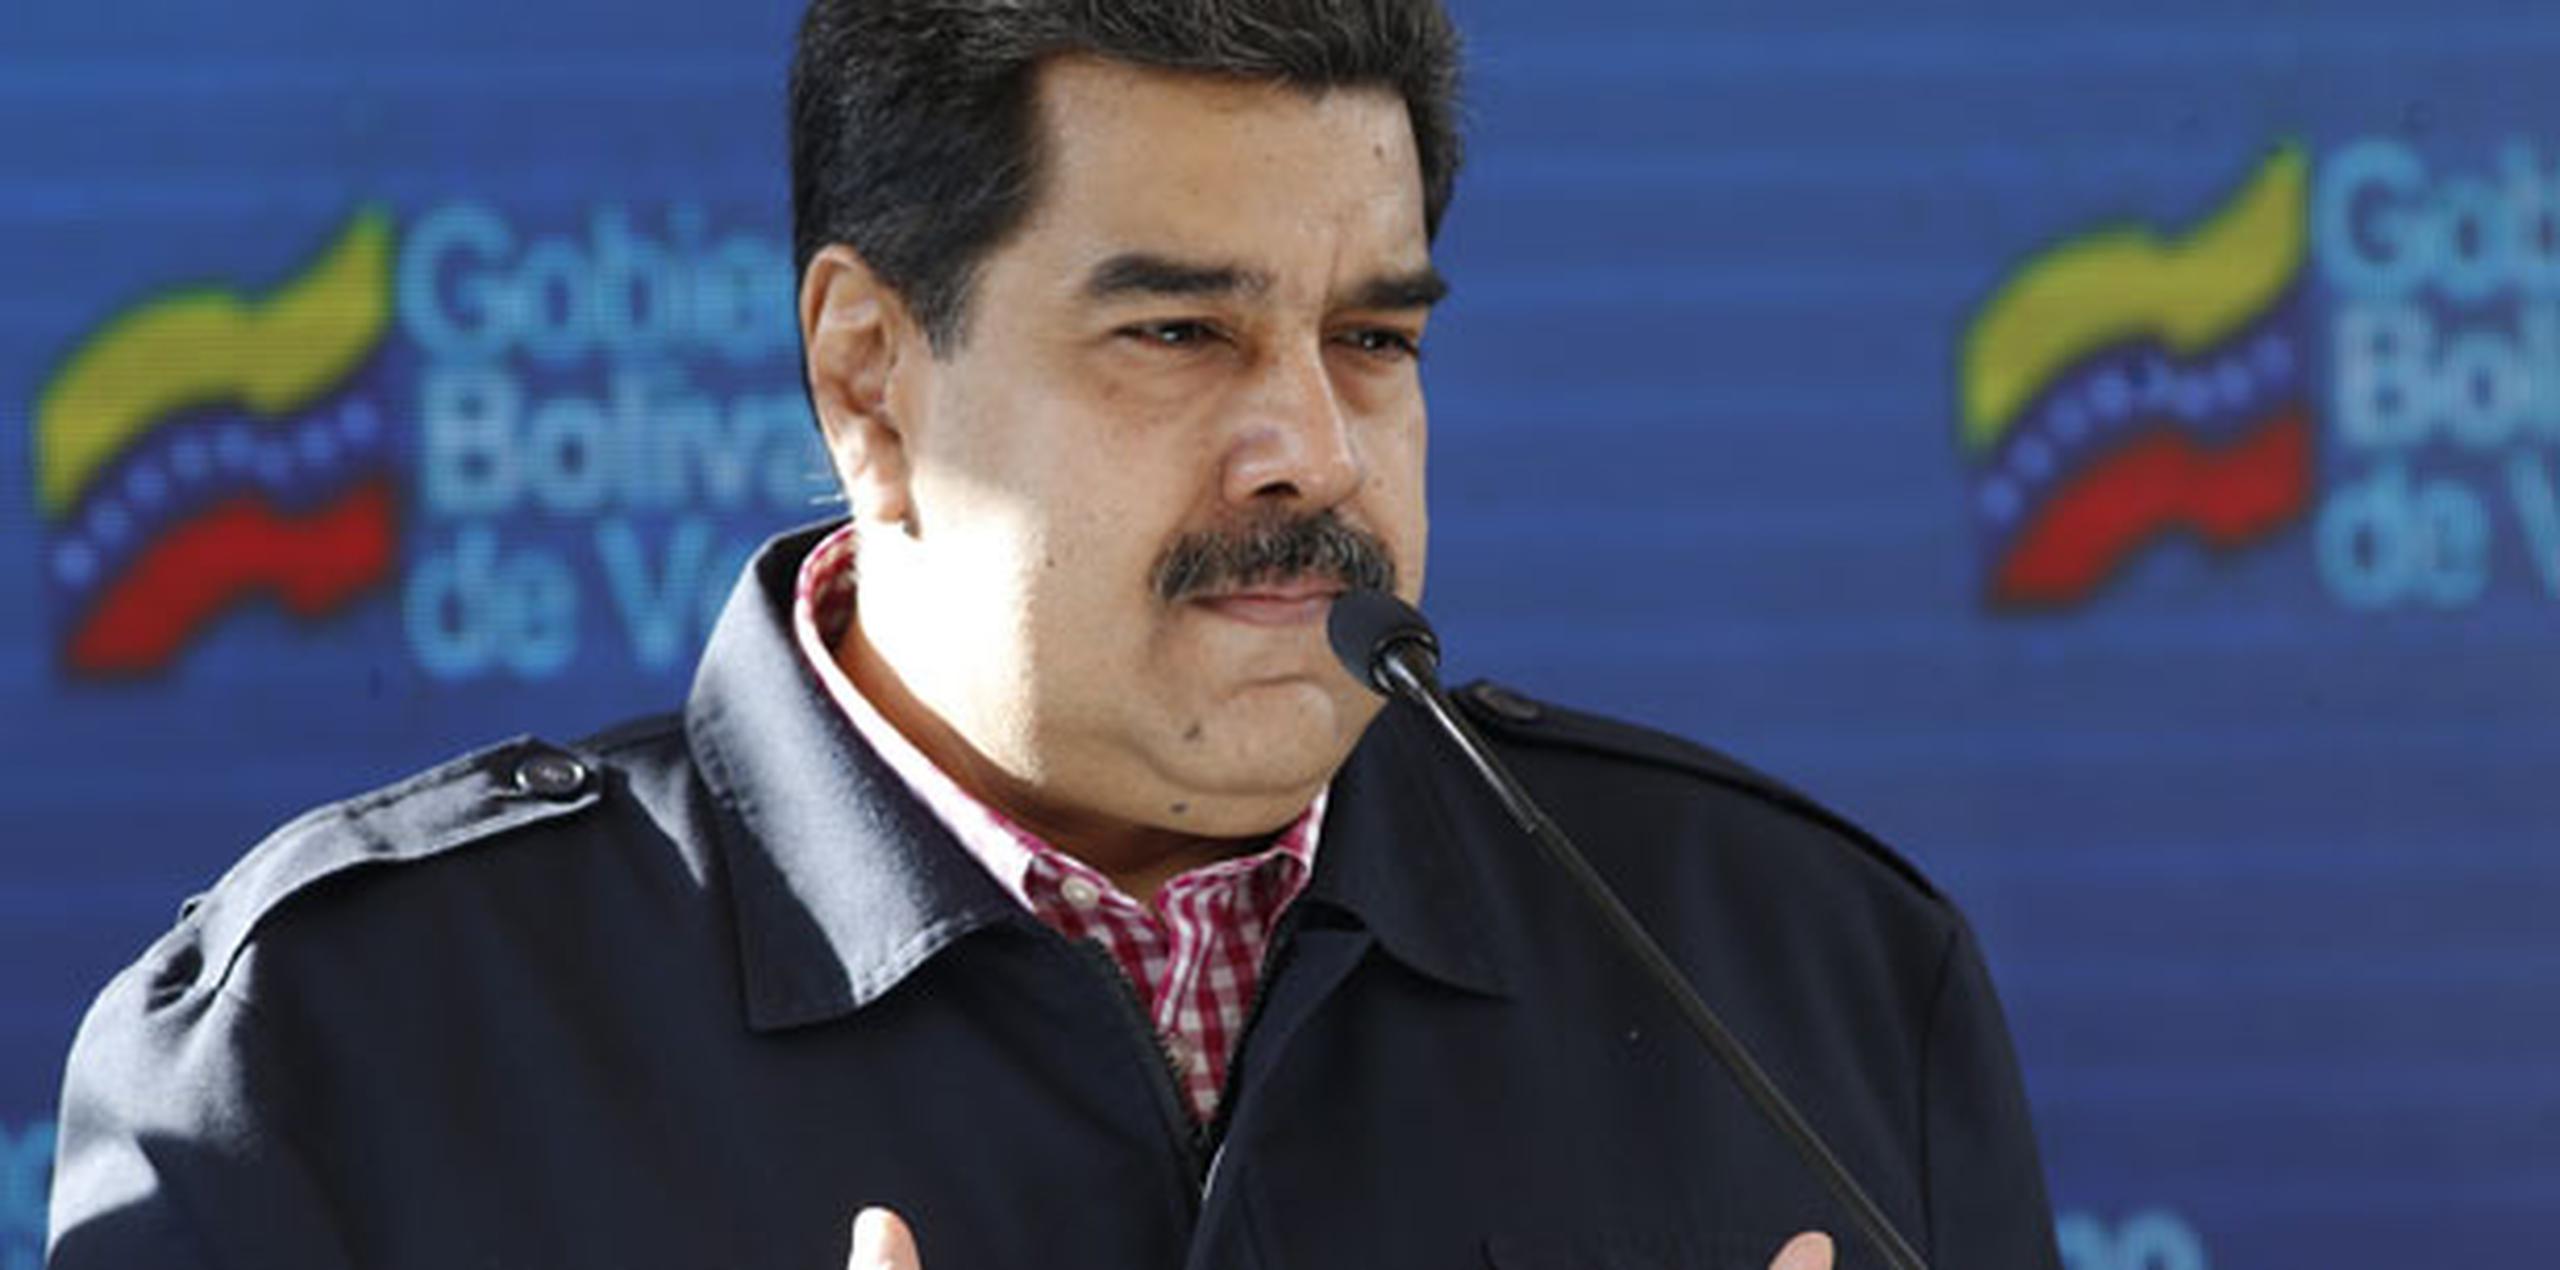 El Gobierno de Nicolás Maduro calificó como "una nueva y grave agresión" de "terrorismo económico" el bloqueo total a los bienes estatales venezolanos en territorio estadounidense anunciado por la Administración de Donald Trump. (Archivo)